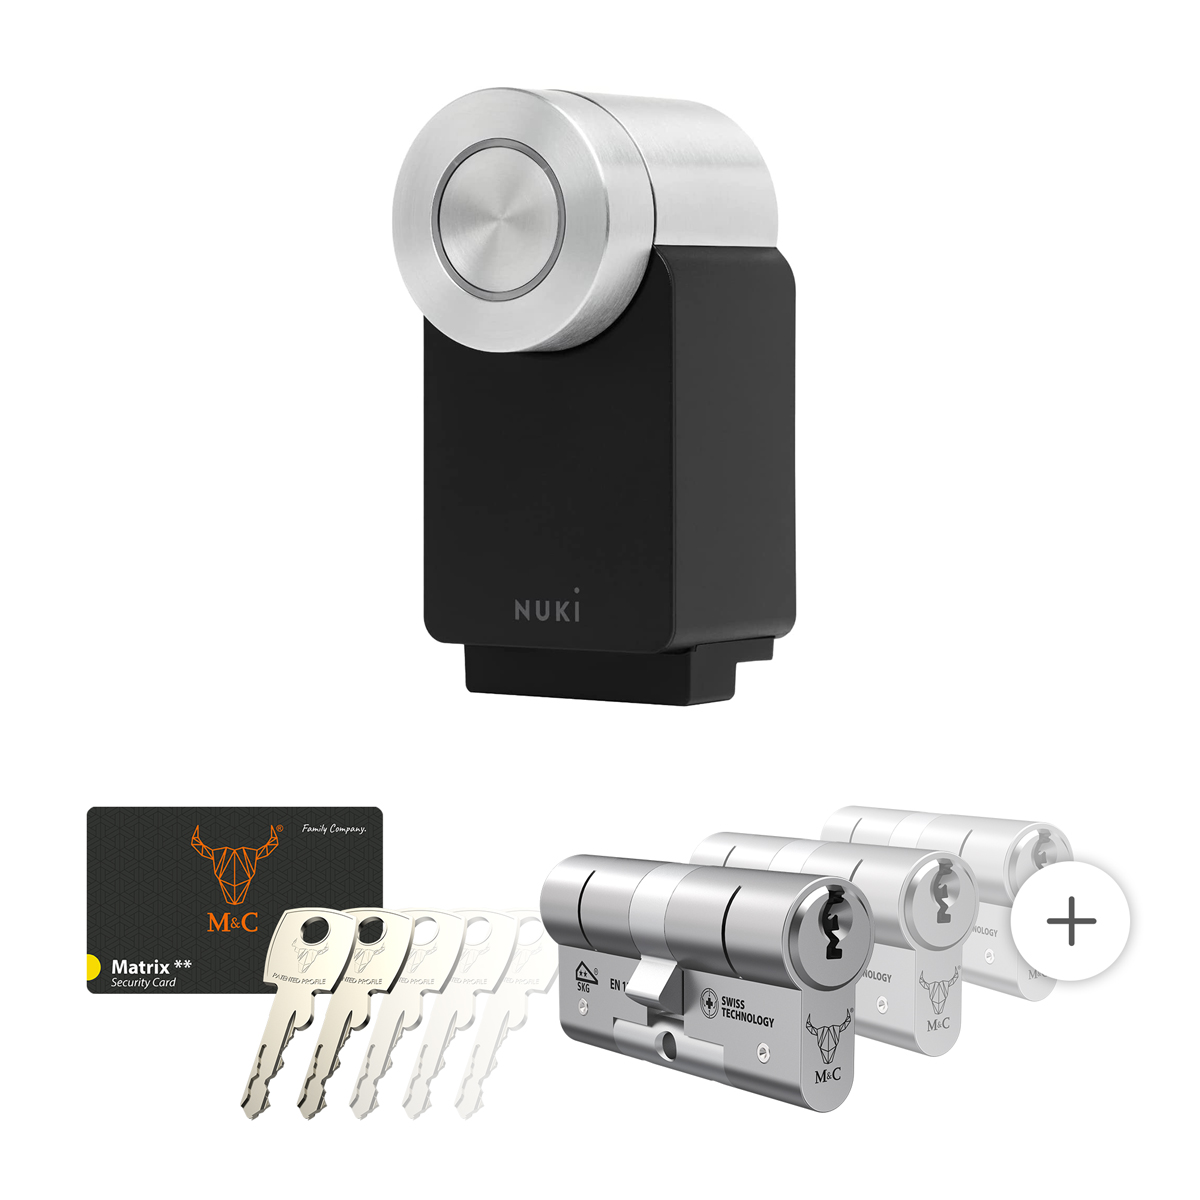 Nuki Smart Lock 4.0 Pro zwart met cilinderslot M&C Matrix SKG** kopen?